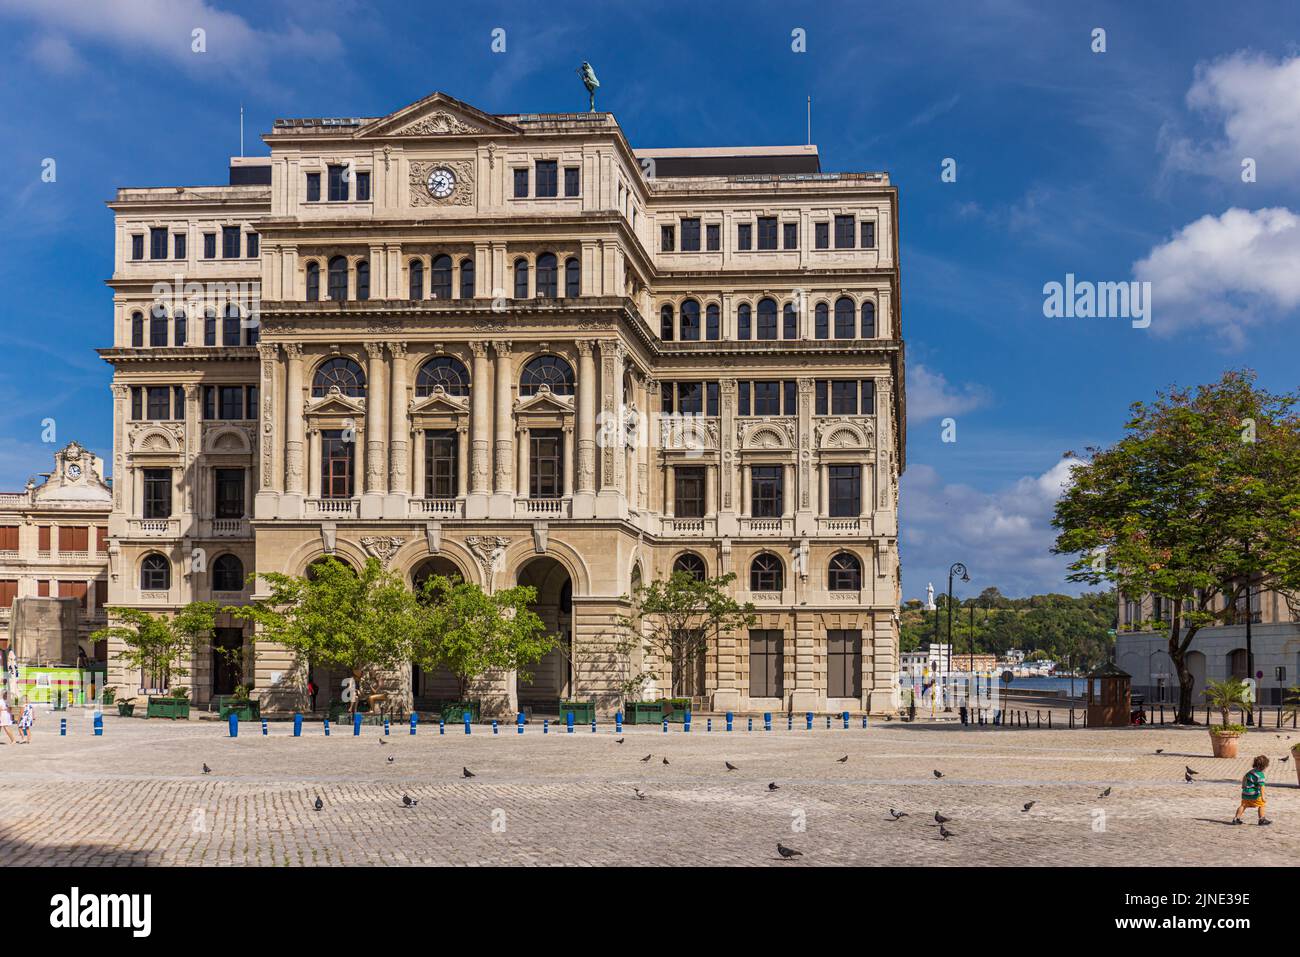 HAVANA CUBA. JANUARY 2, 2021: San Francisco de Asis Square in Havanna, Cuba Stock Photo